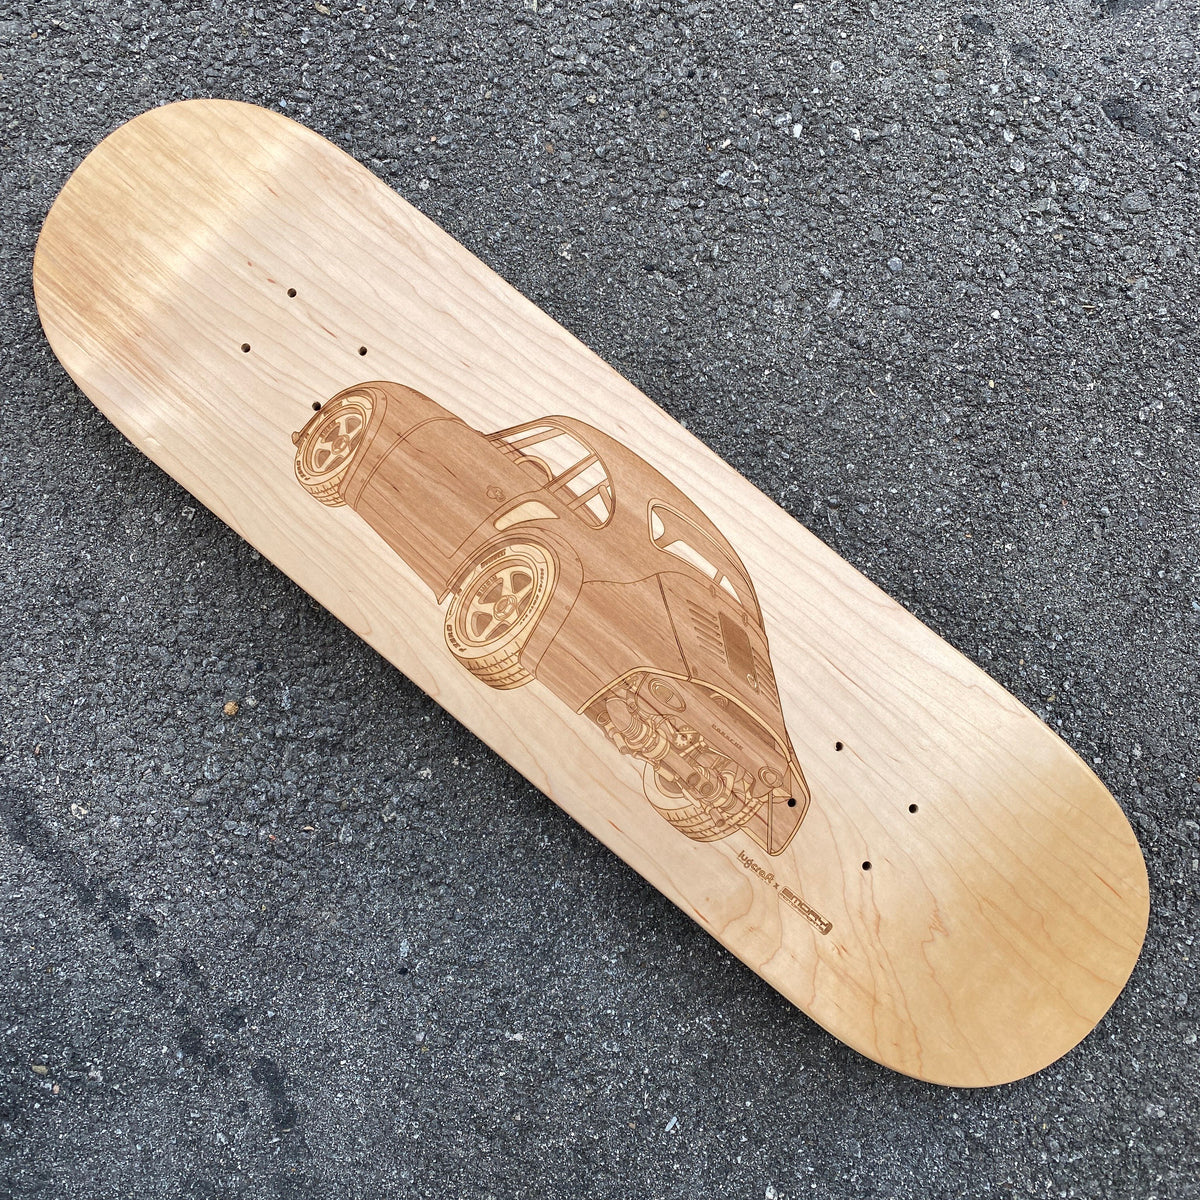 Emory Outlaw MOMO 356 RSR Skateboard Deck Art - Lugcraft Inc